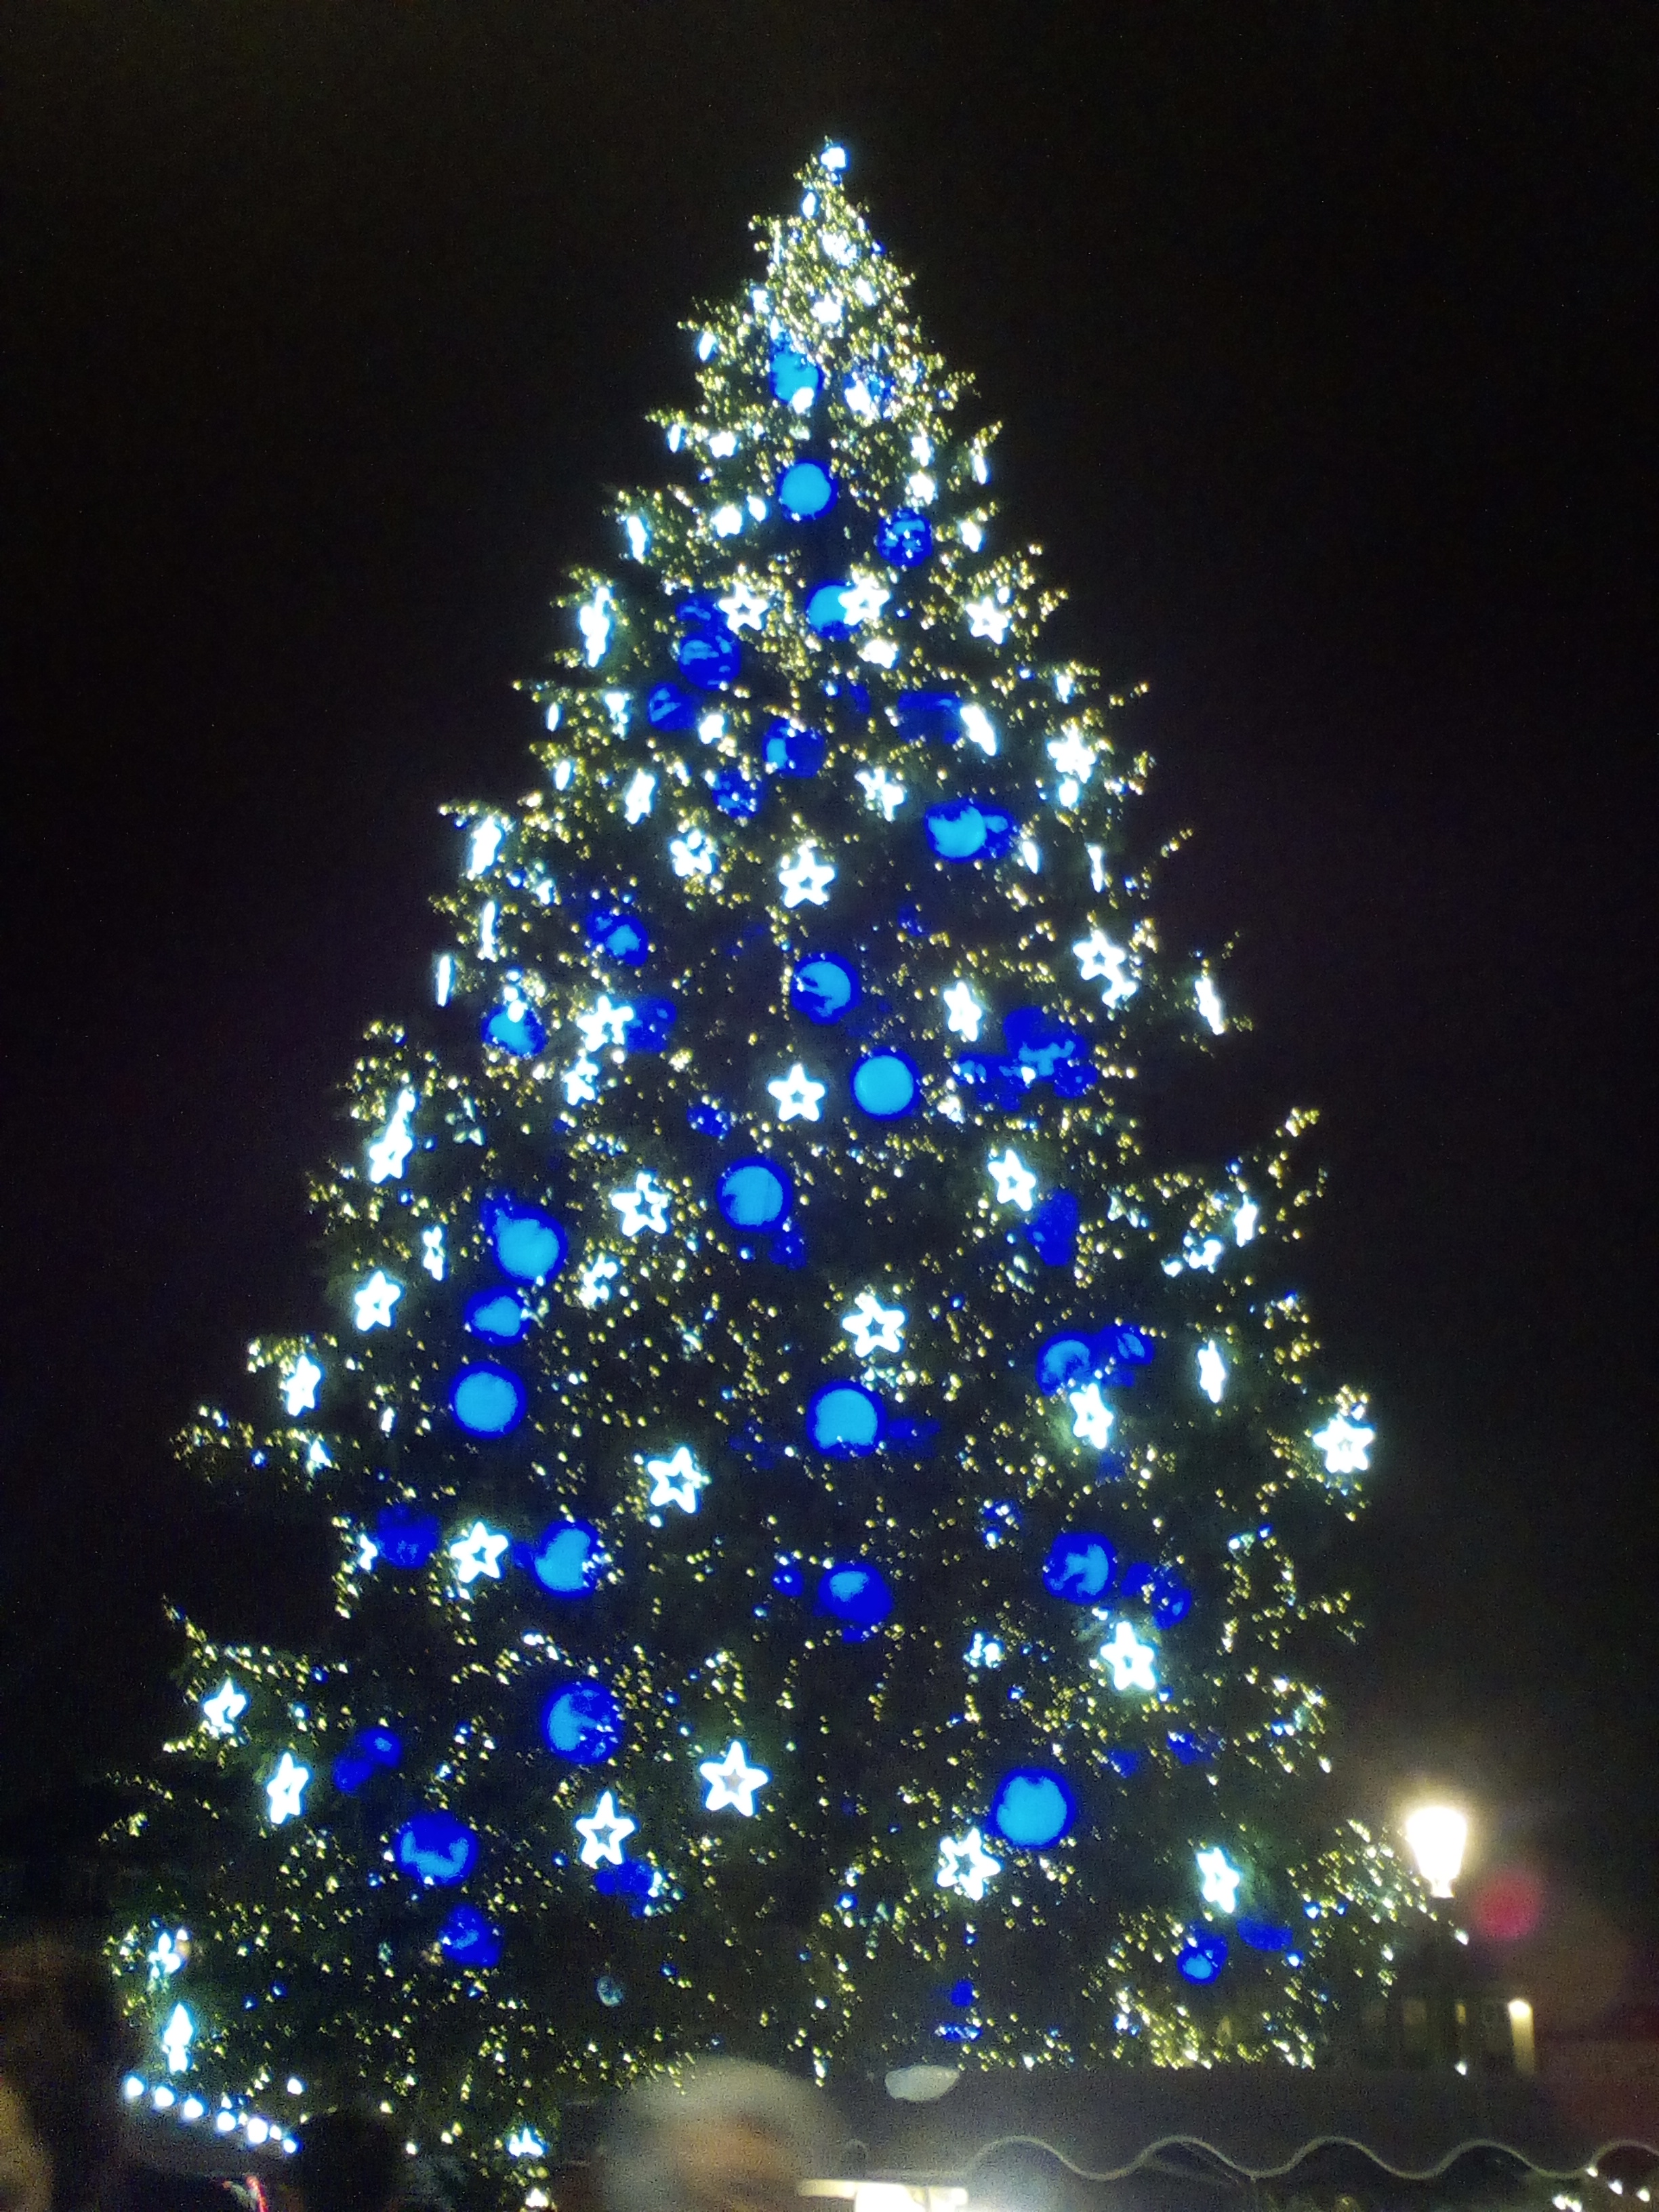 Énorme sapin de Noel, illuminé en bleu et blanc. Photo prise de nuit.